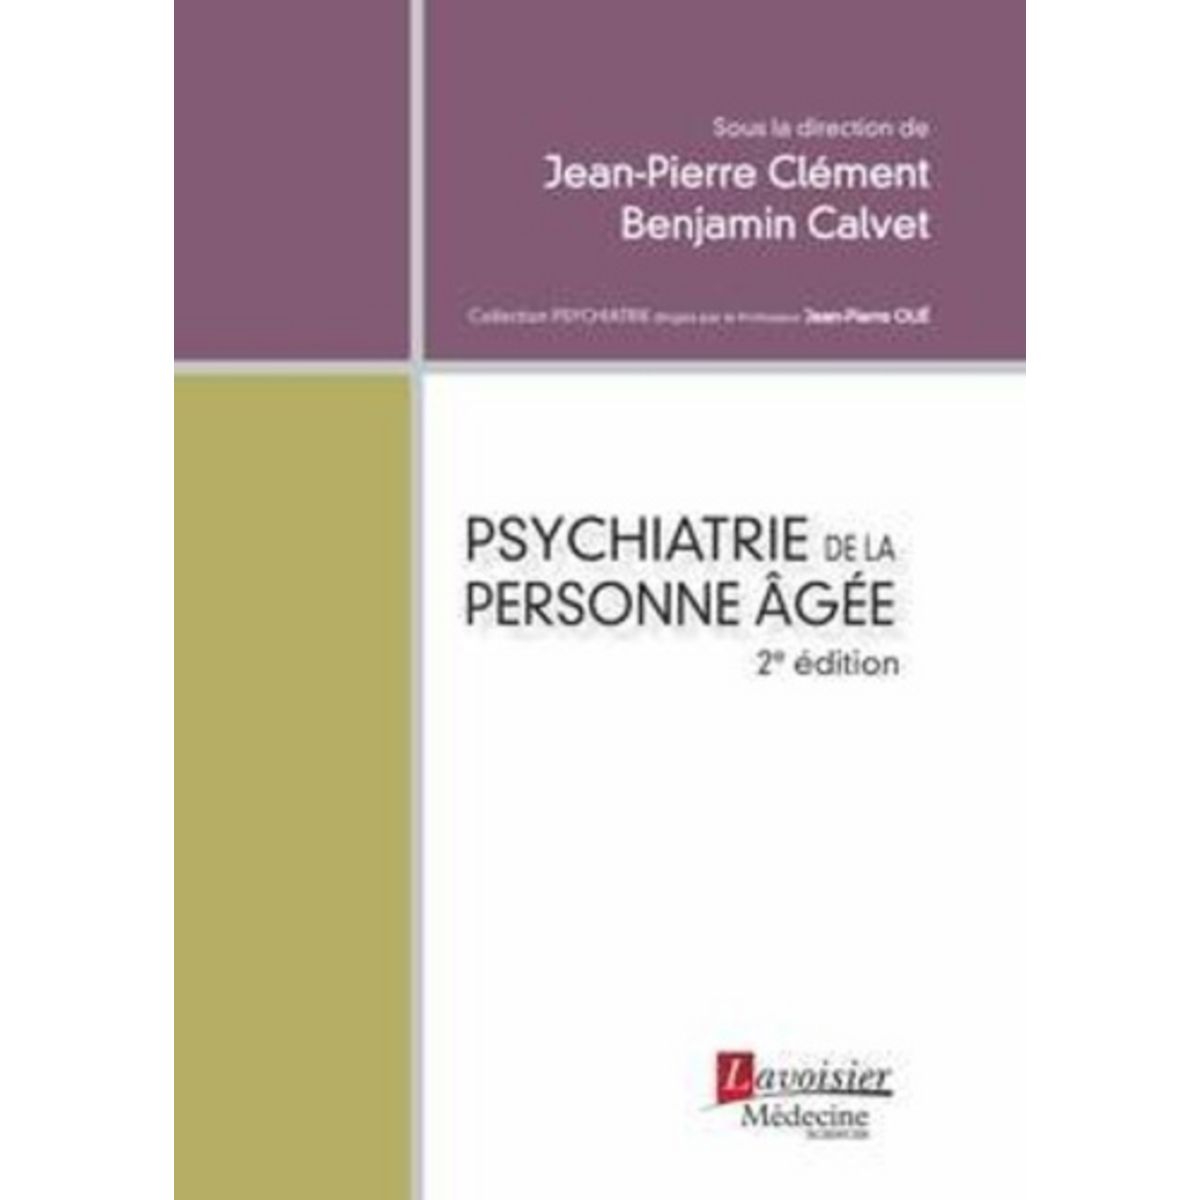  PSYCHIATRIE DE LA PERSONNE AGEE. 2E EDITION, Clément Jean-Pierre